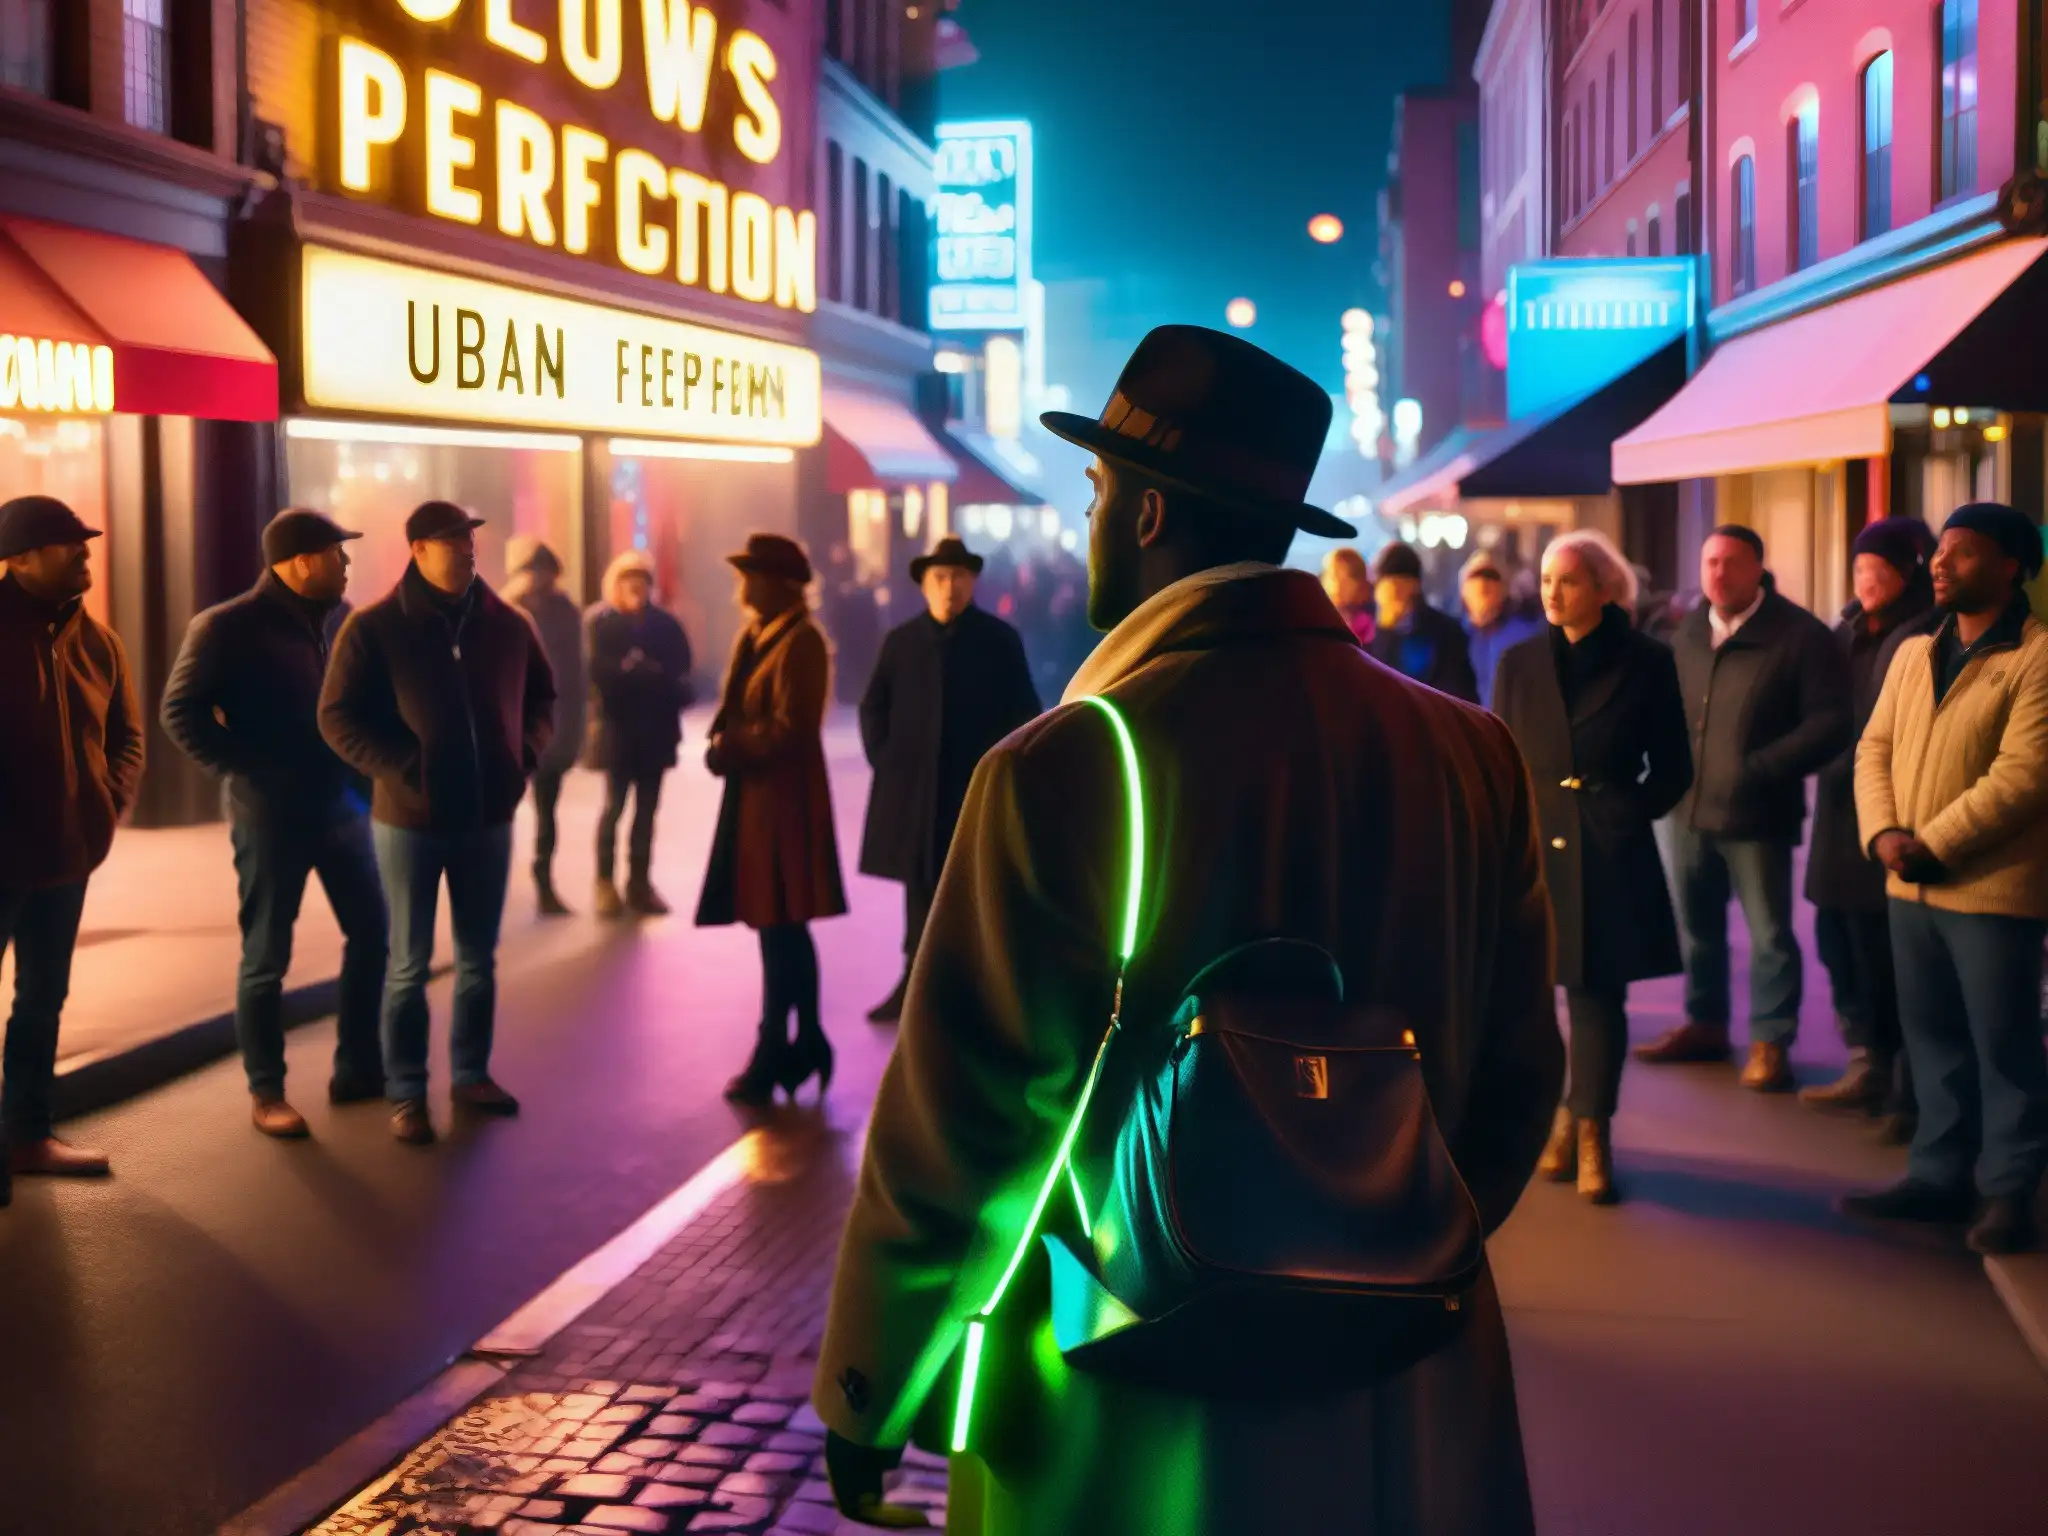 Una calle bulliciosa y tenue de la ciudad de noche, con figuras sombrías reunidas alrededor de un artista callejero contando una cautivadora leyenda urbana